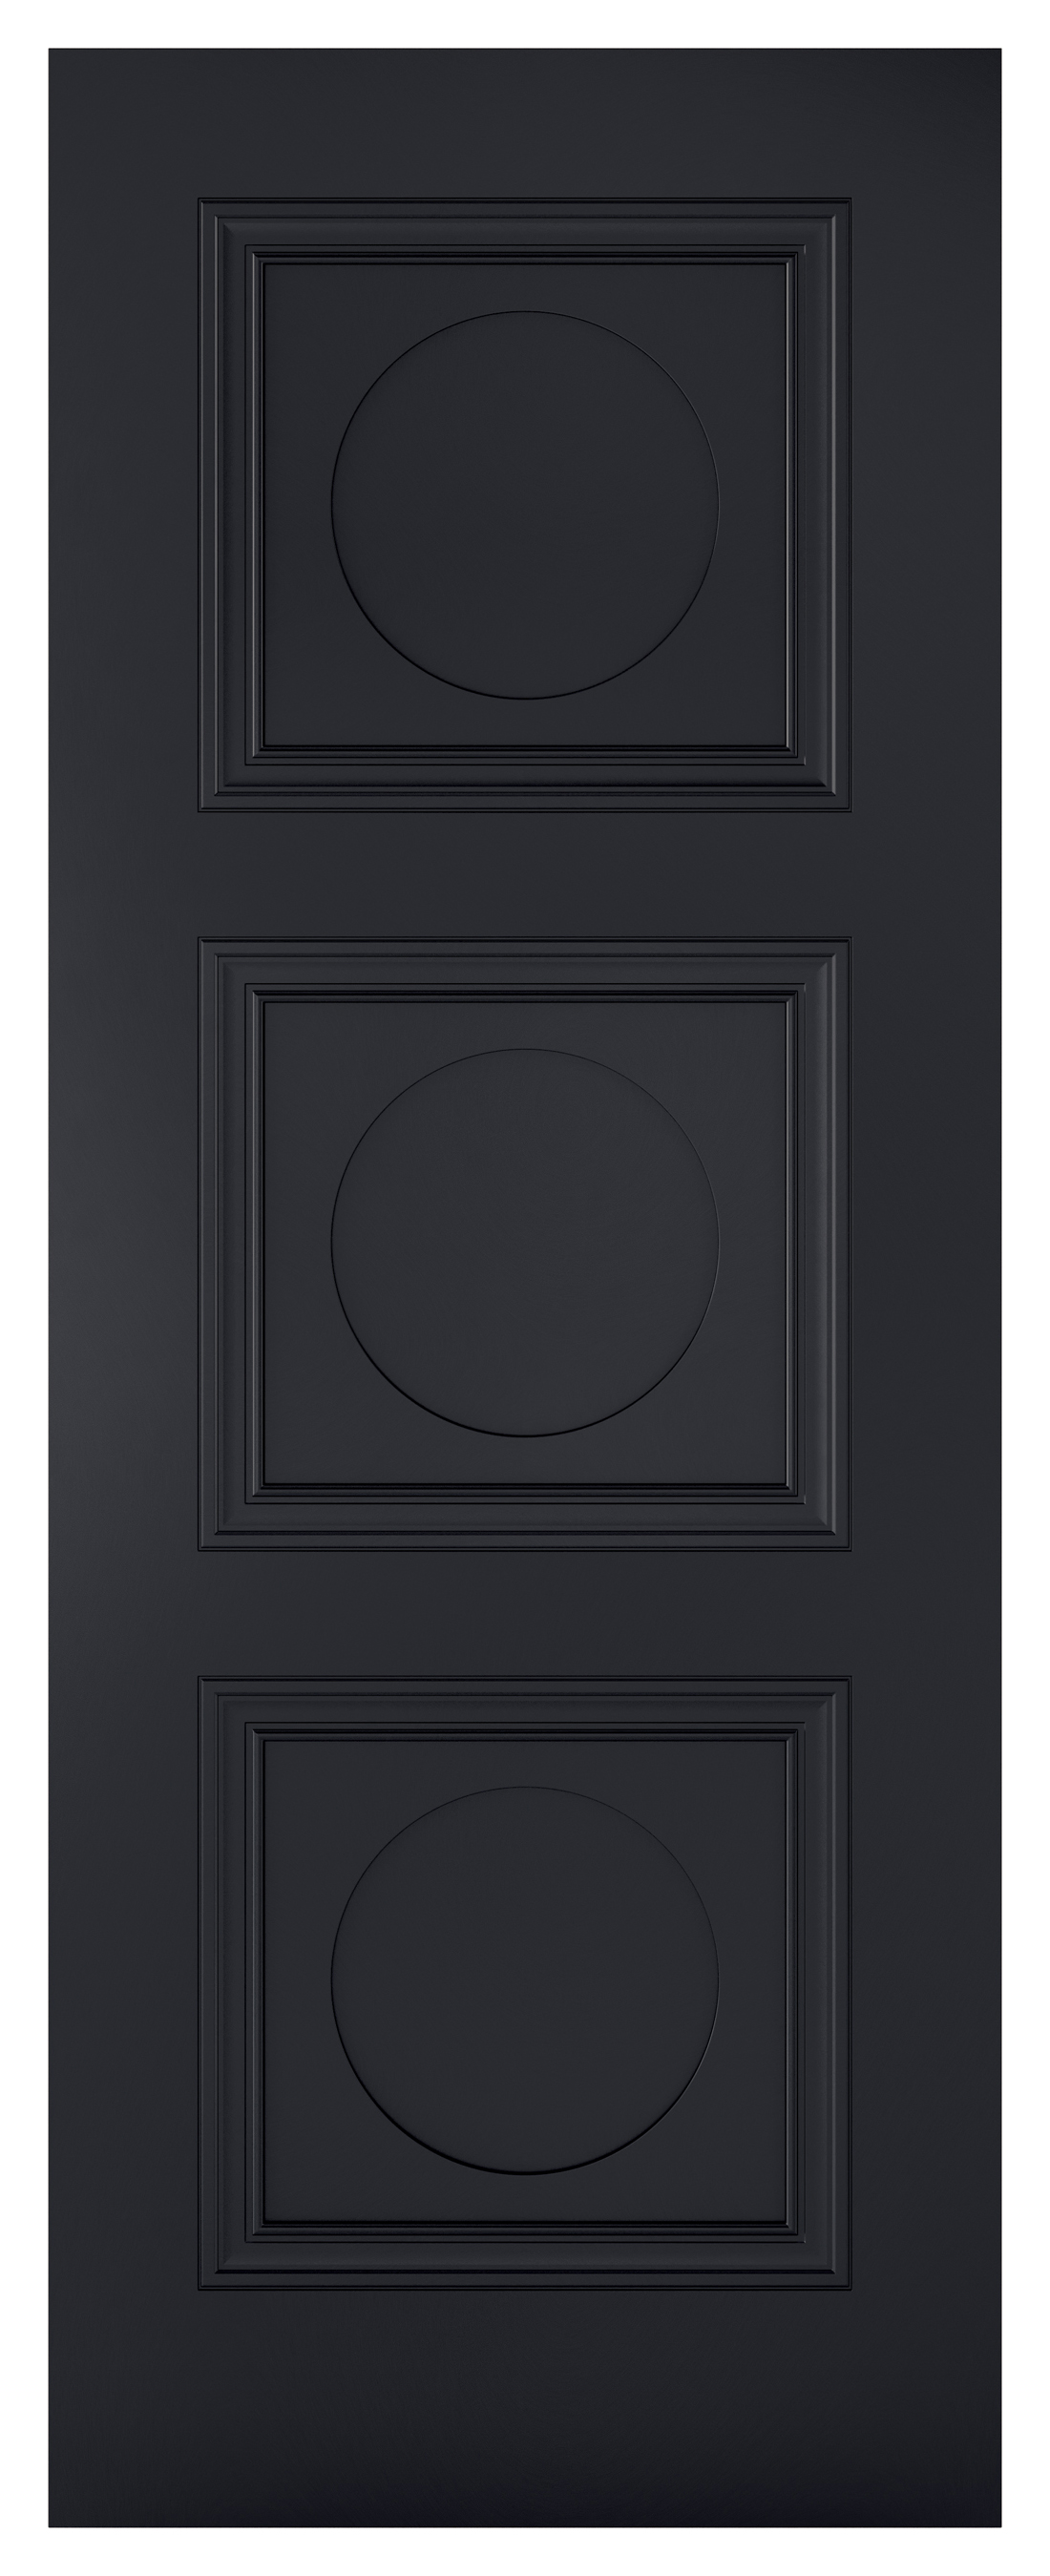 LPD Internal Antwerp 3 Panel Primed Black FD30 Fire Door - 1981 mm